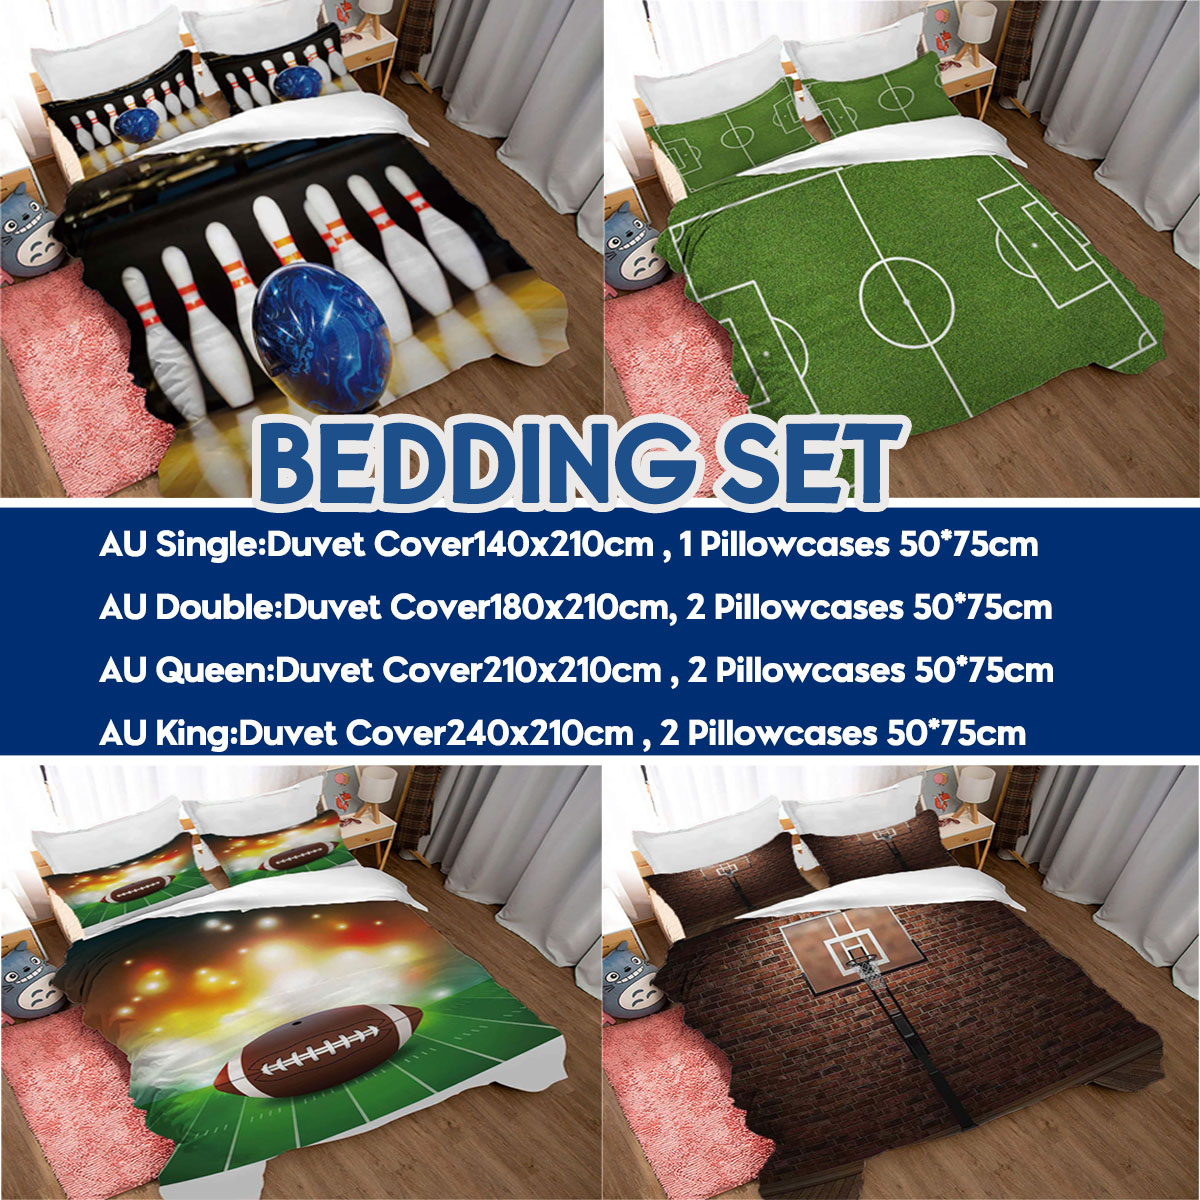 3D-Printed-Football-Basketball-Bowling-GA-Bedding-Set-Bedlinen-Duvet-Cover-Pillowcases-for-Bedding-S-1788703-2